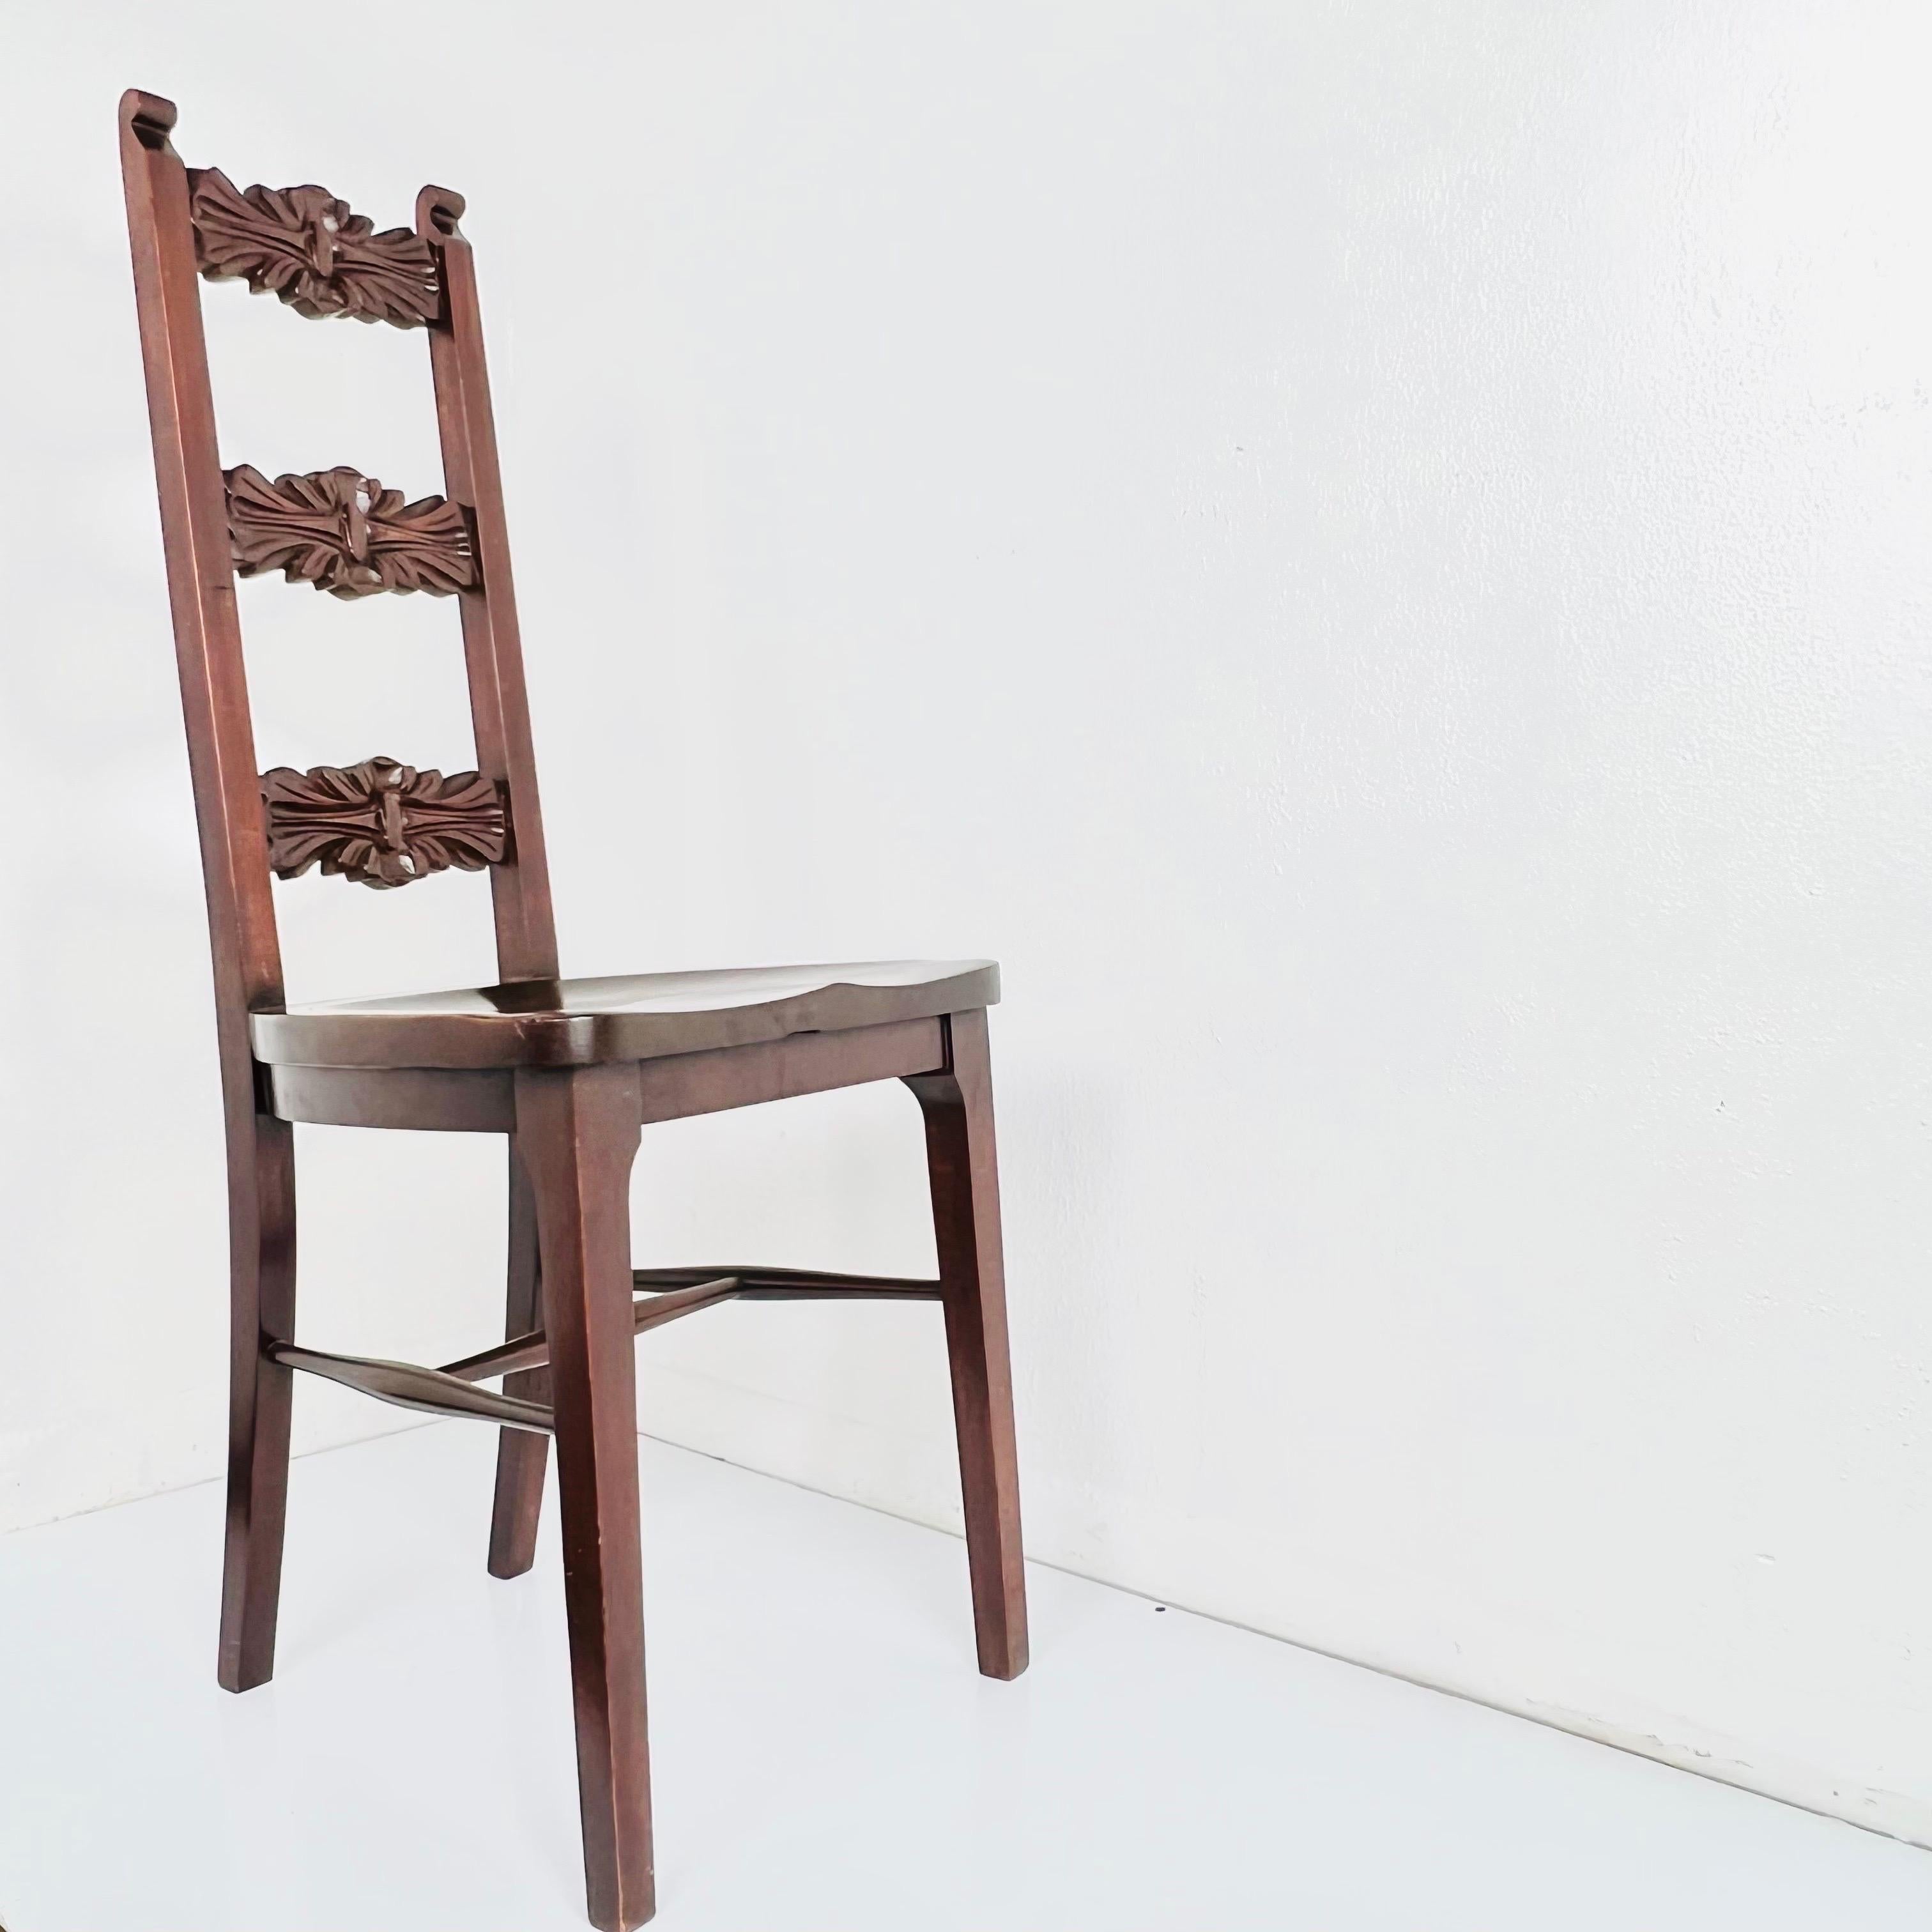 Einzelner geschnitzter Mahagoni-Sessel von Stickley Furniture. Schöne geschnitzte Rosette Detail auf der Rückseite. Er eignet sich perfekt als Schreibtischstuhl oder Frisierstuhl. Stabiler, guter antiker Zustand.